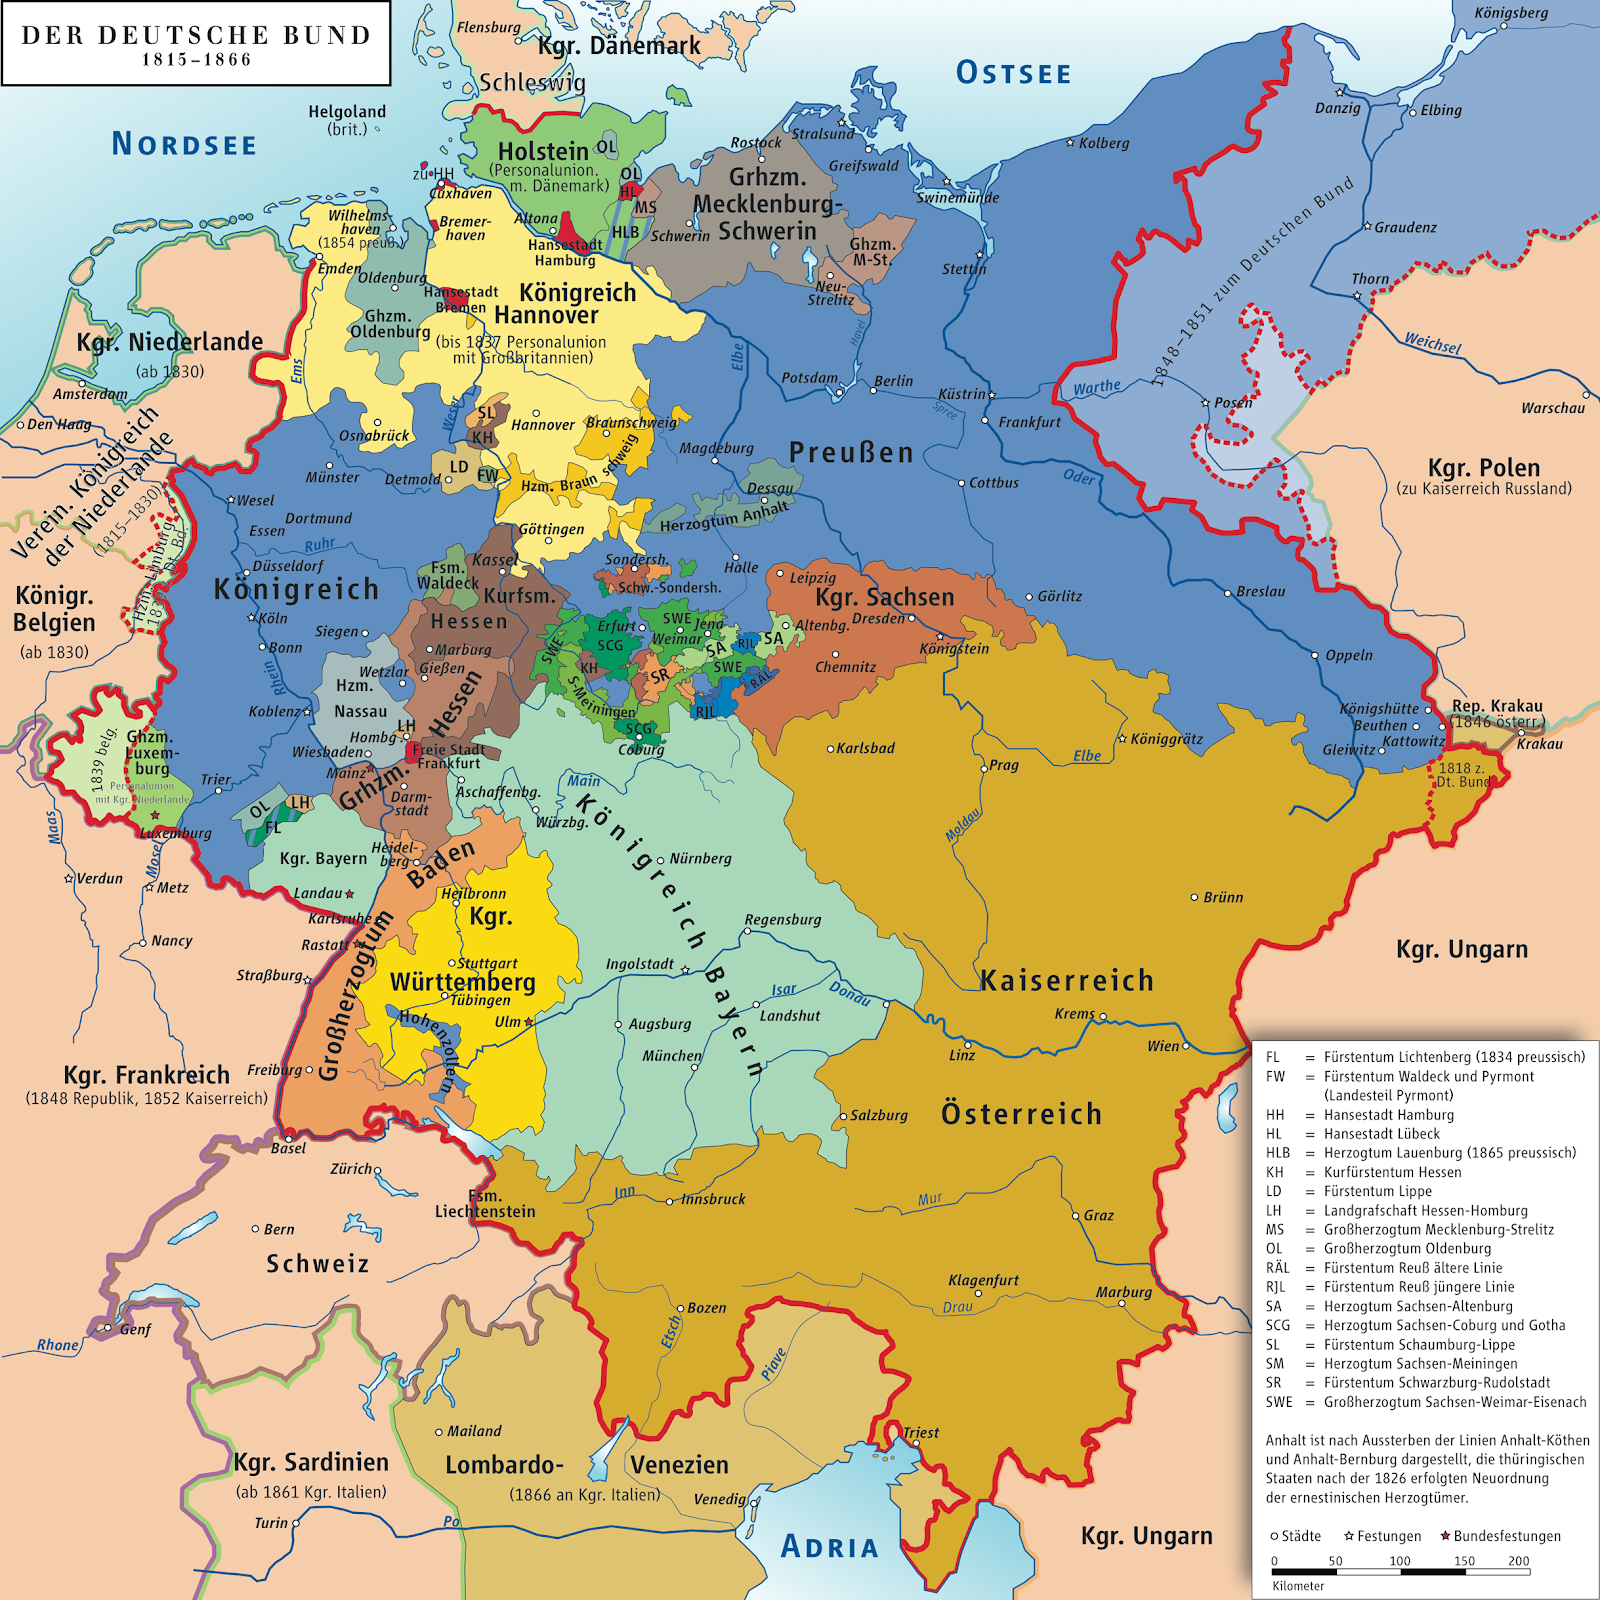 Alemania / Alemanía (Argentina) - Wikipedia, la enciclopedia libre - Alemania examina la vacuna astrazeneca tras su suspensión parcial en berlín.